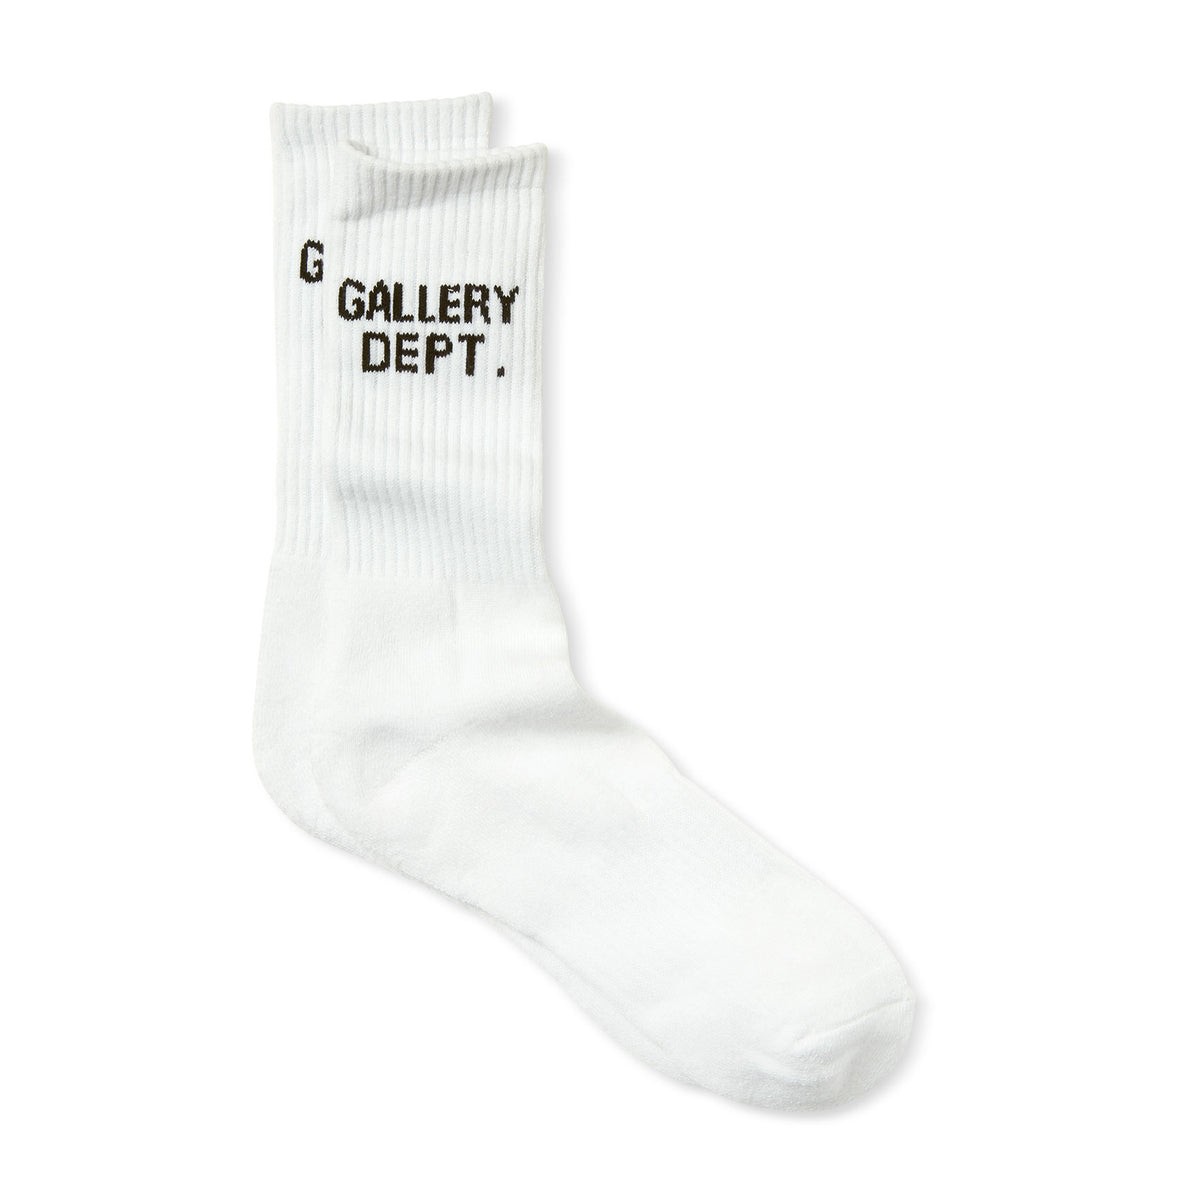 GALLERY DEPT CLEAN SOCKS セット